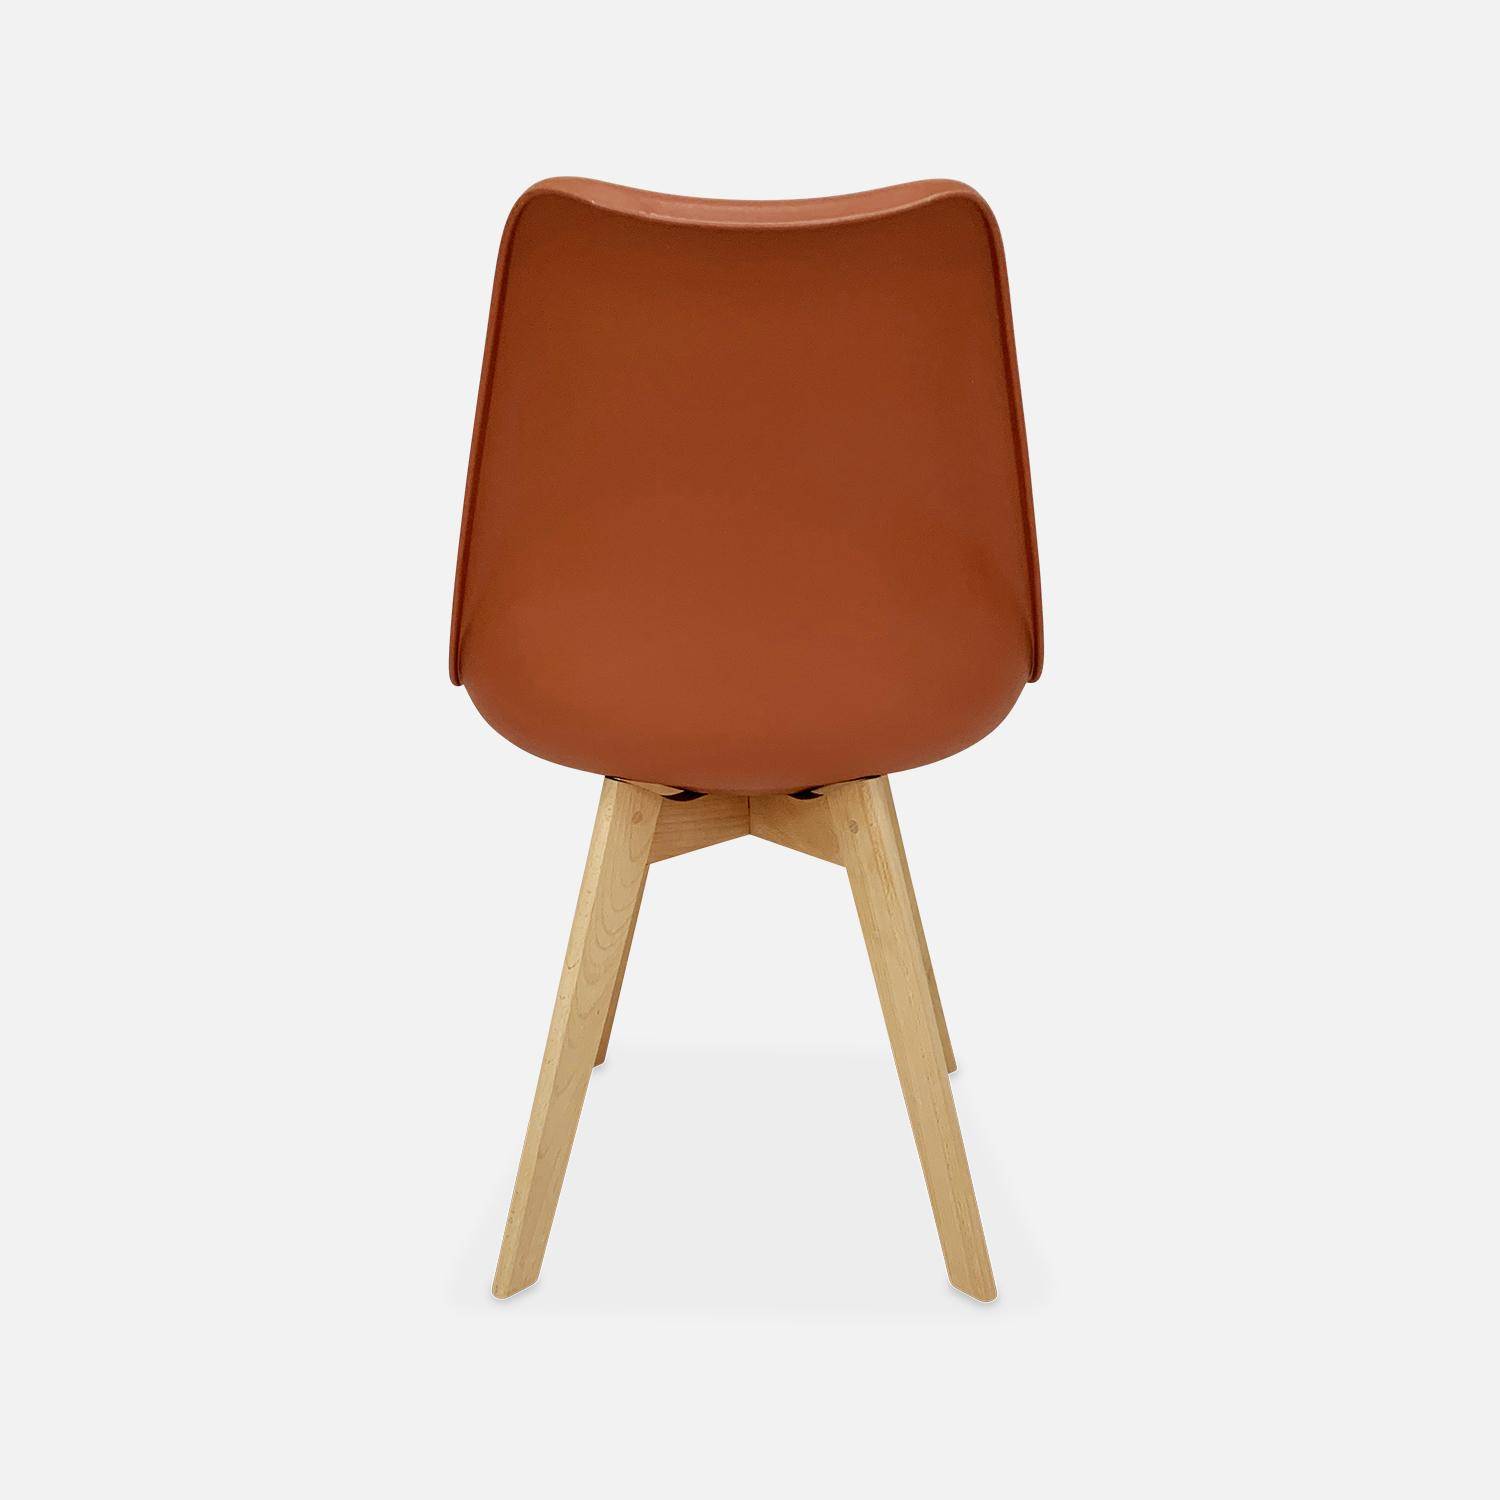 Conjunto de 4 sillas escandinavas, patas de madera de haya, asientos individuales, terracota Photo7